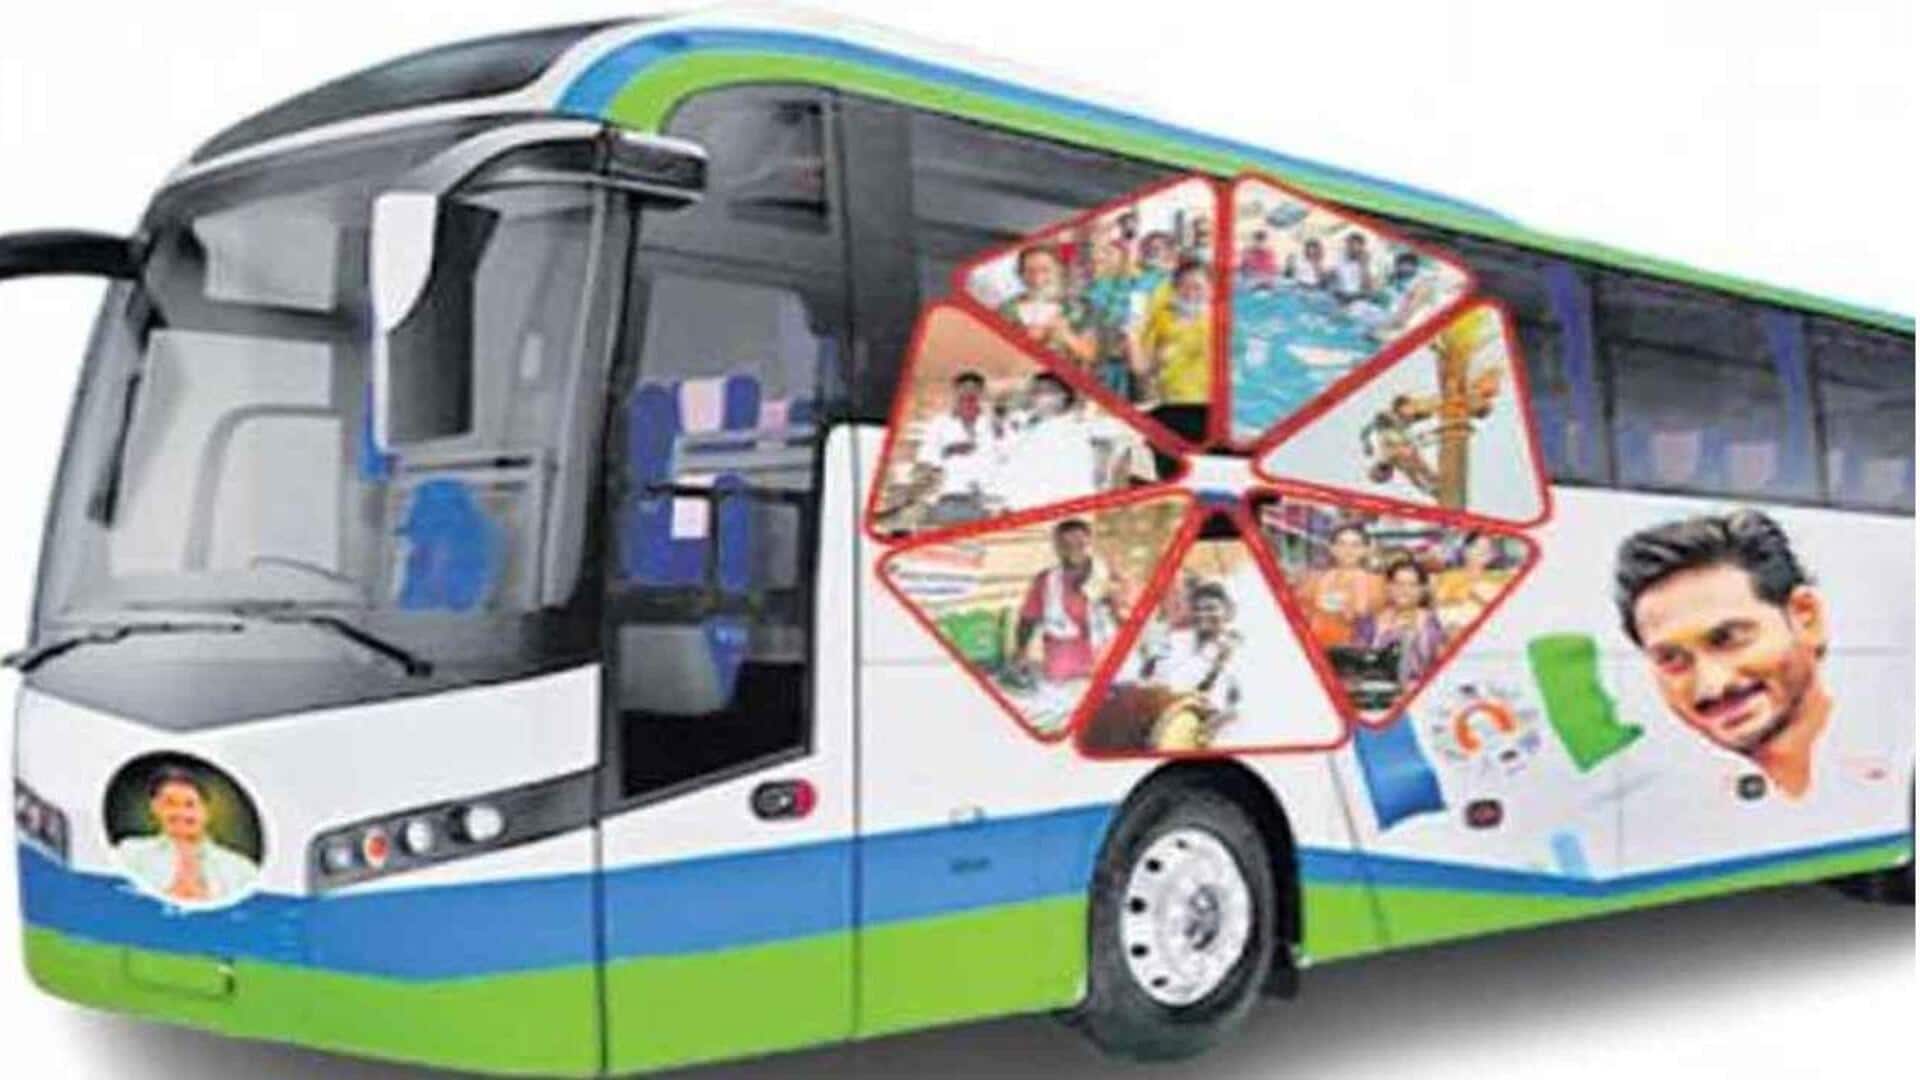 ycp bus yatra: "మేమంతా సిద్దం" పేరుతో సీఎం జగన్ బస్సుయాత్ర